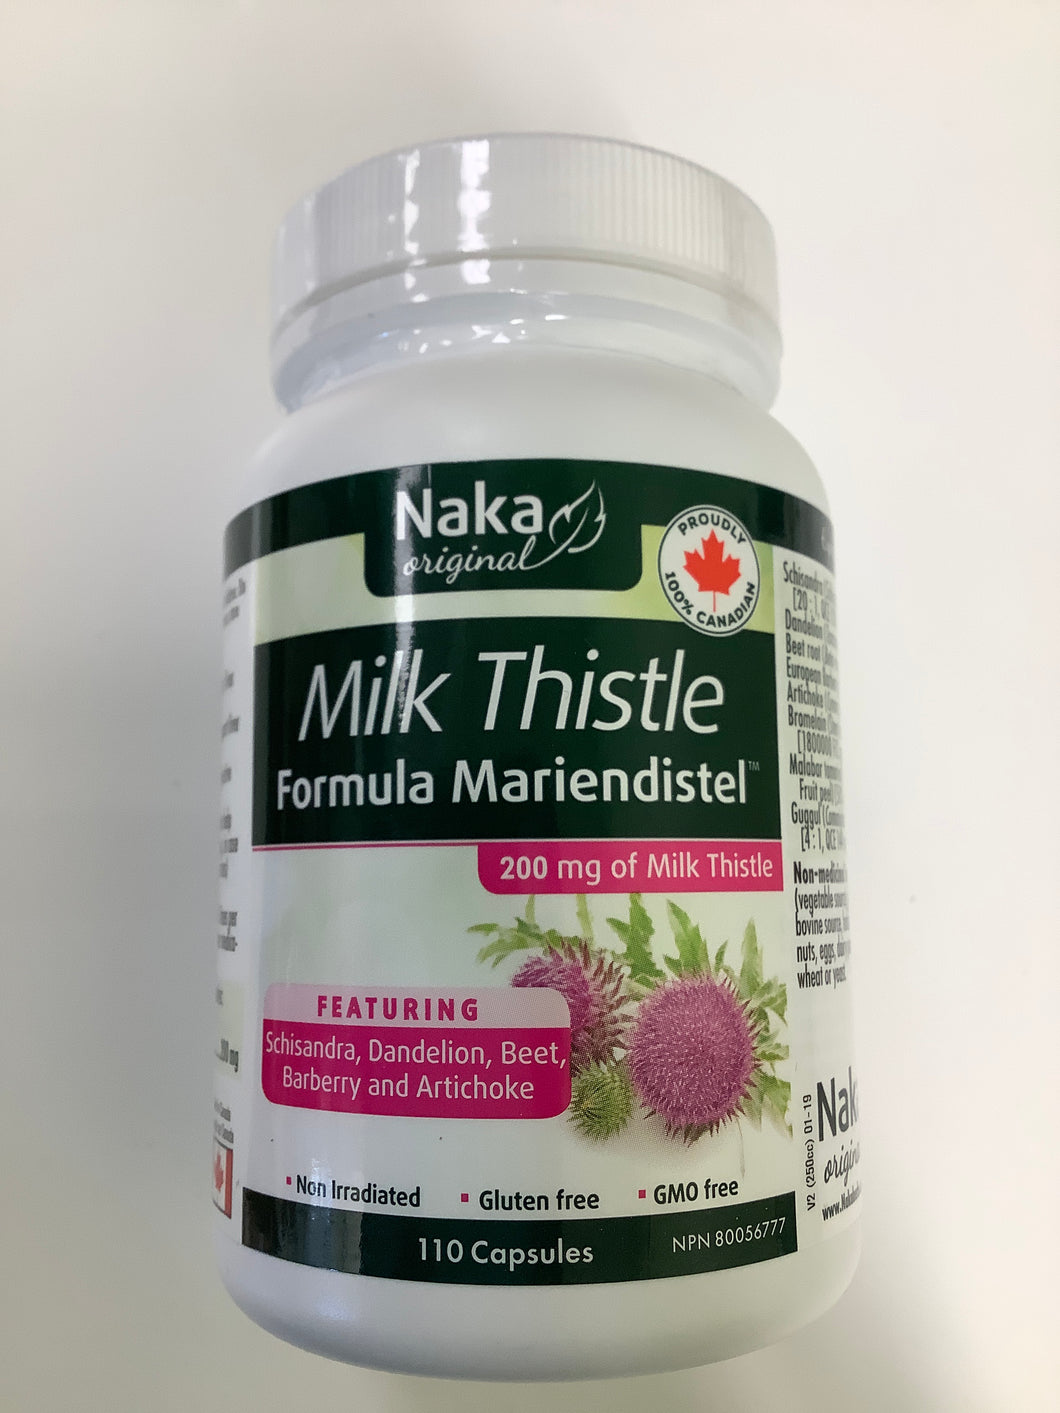 Naka Milk Thistle Formula Mariendistel